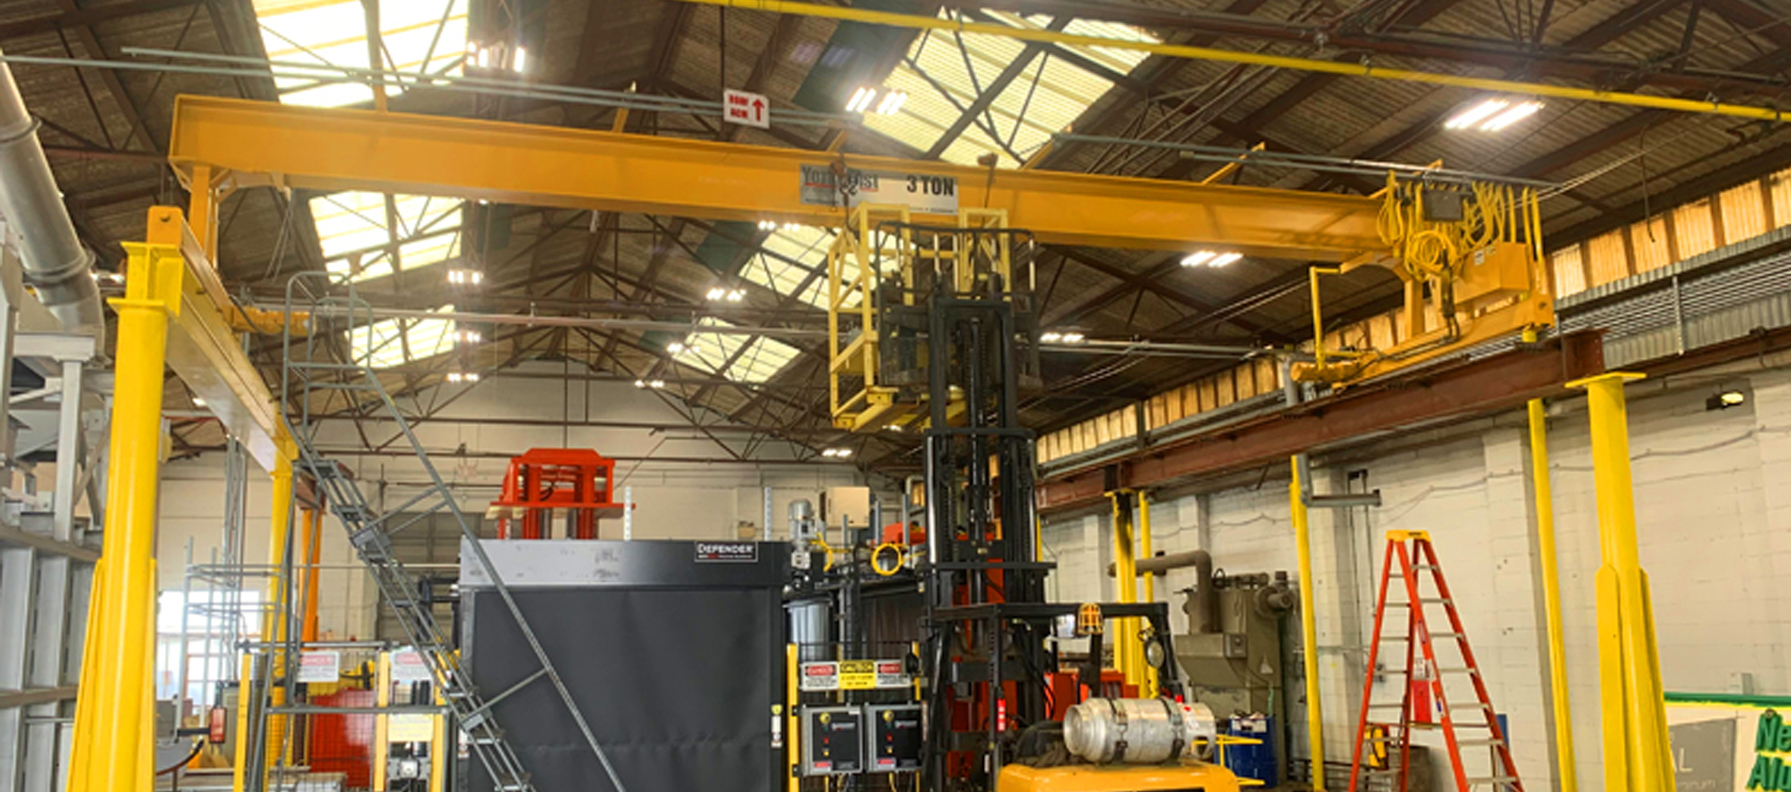 Crane System Modernization Project At A Customer Facility